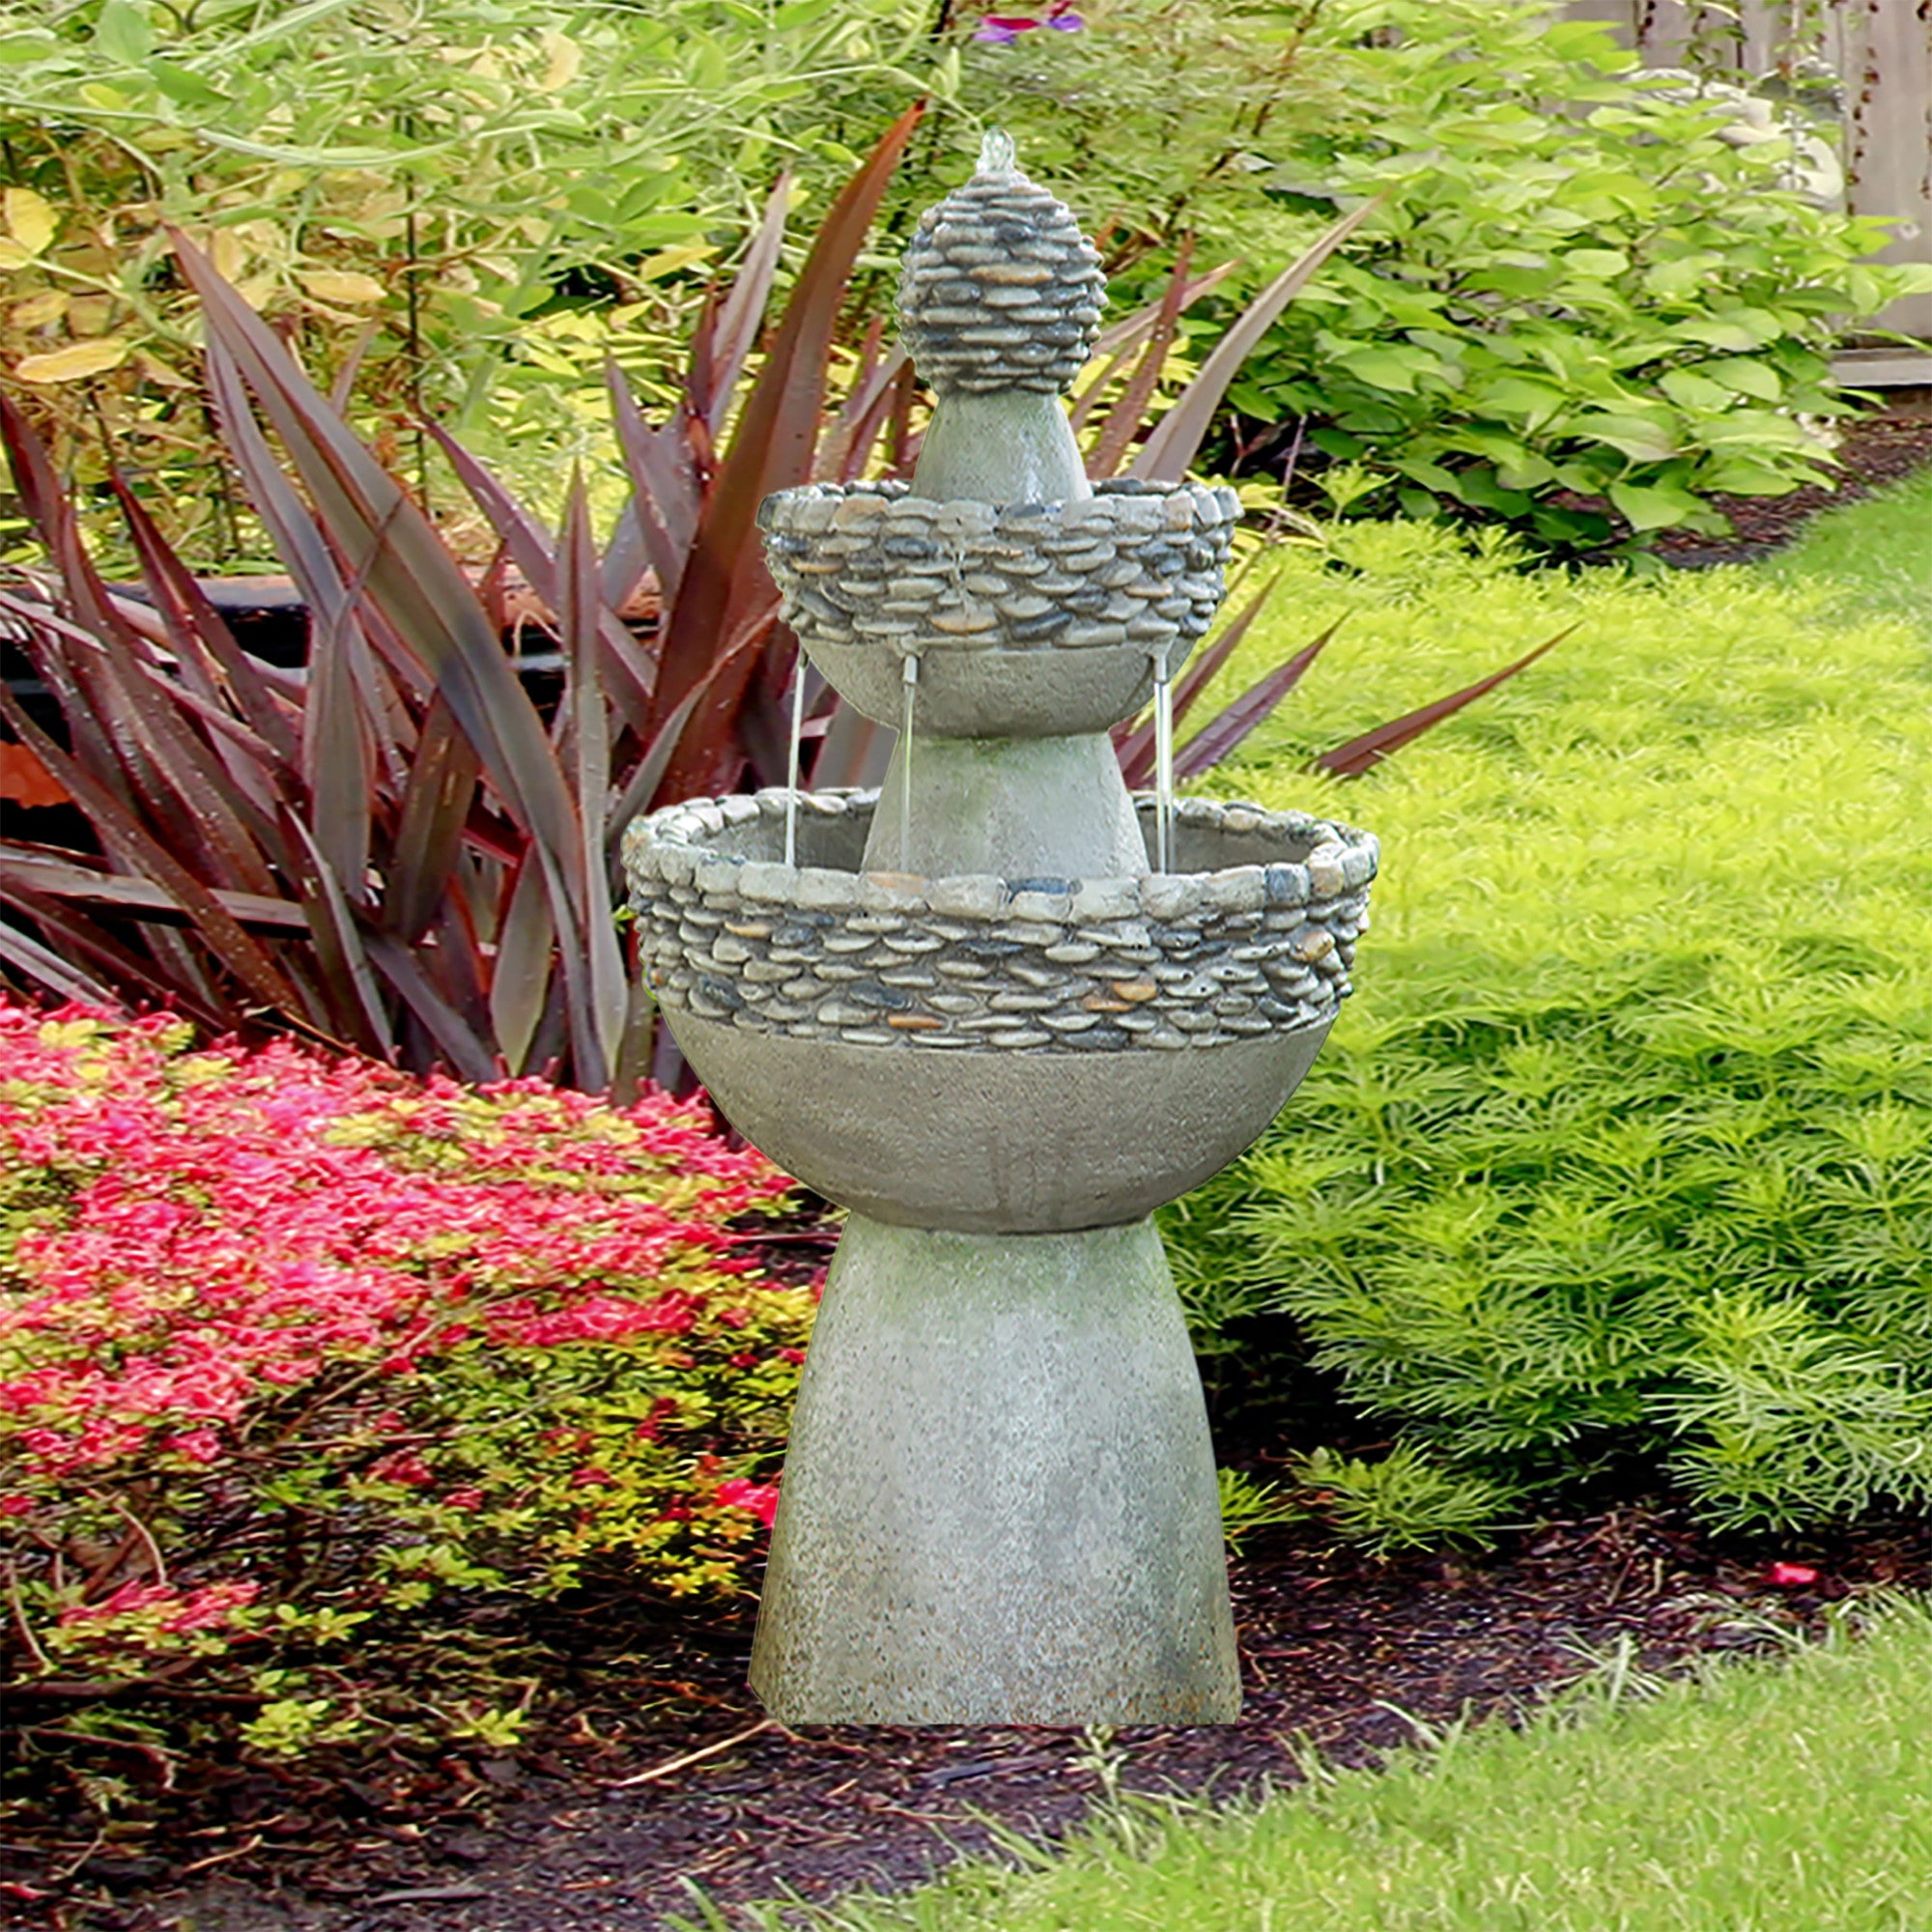 Teamson Home Outdoor Stone-Look 3-Tier Pedestal Floor Fountain, Gray